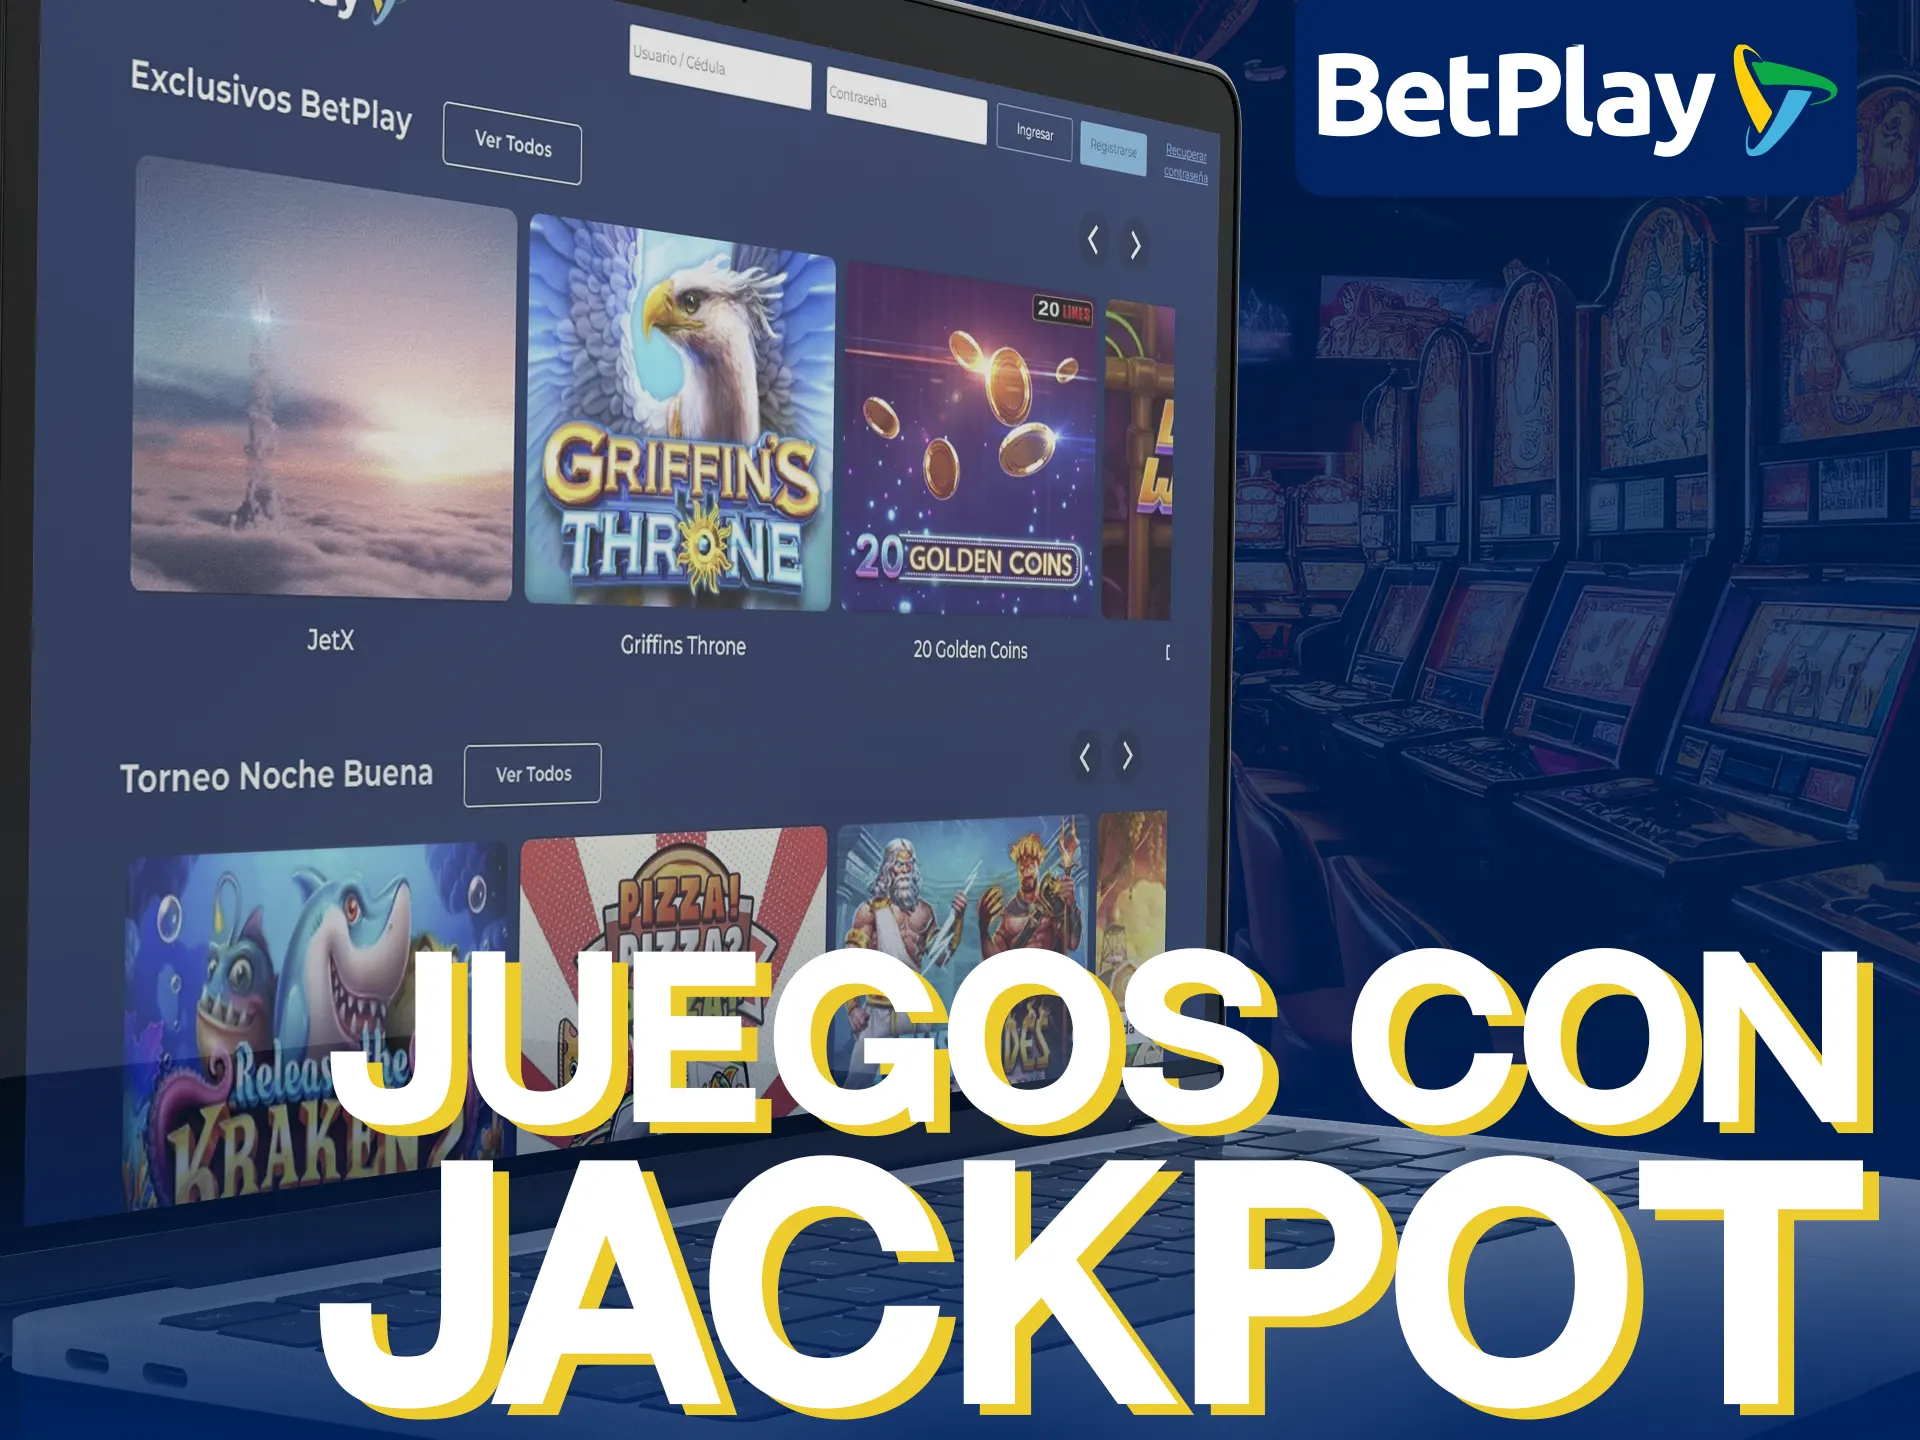 BetPlay ofrece juegos con jackpot progresivo, con mayores ganancias y emoción.